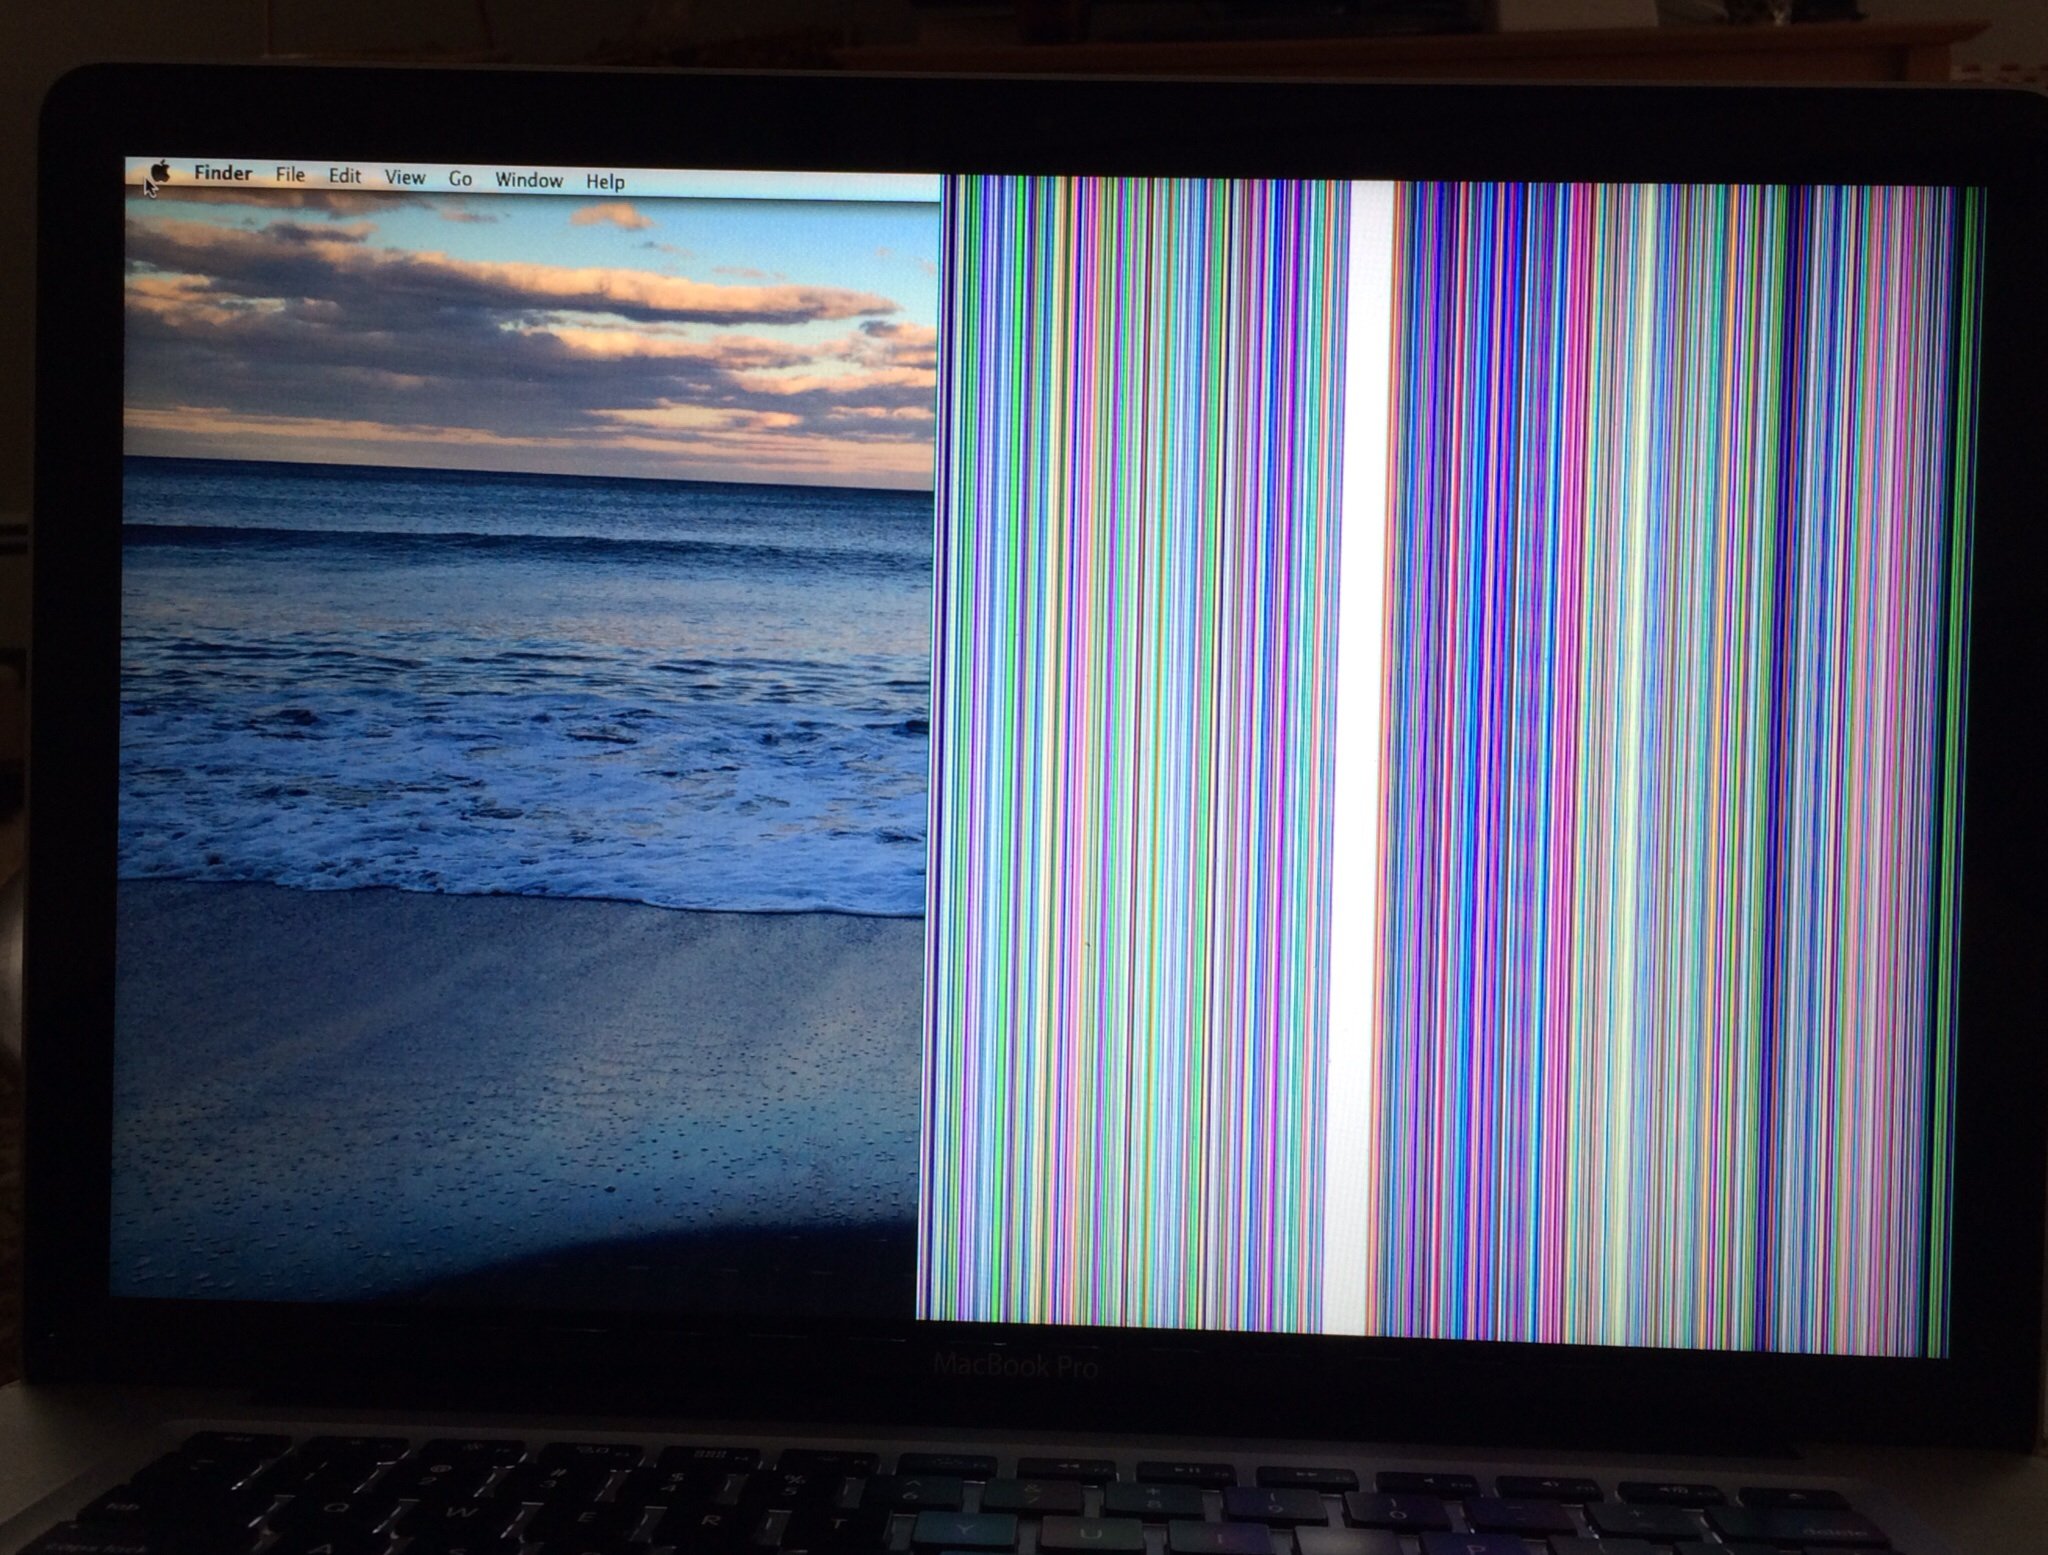 màn hình Macbook bị sọc do máy bị nhiễm từ tính